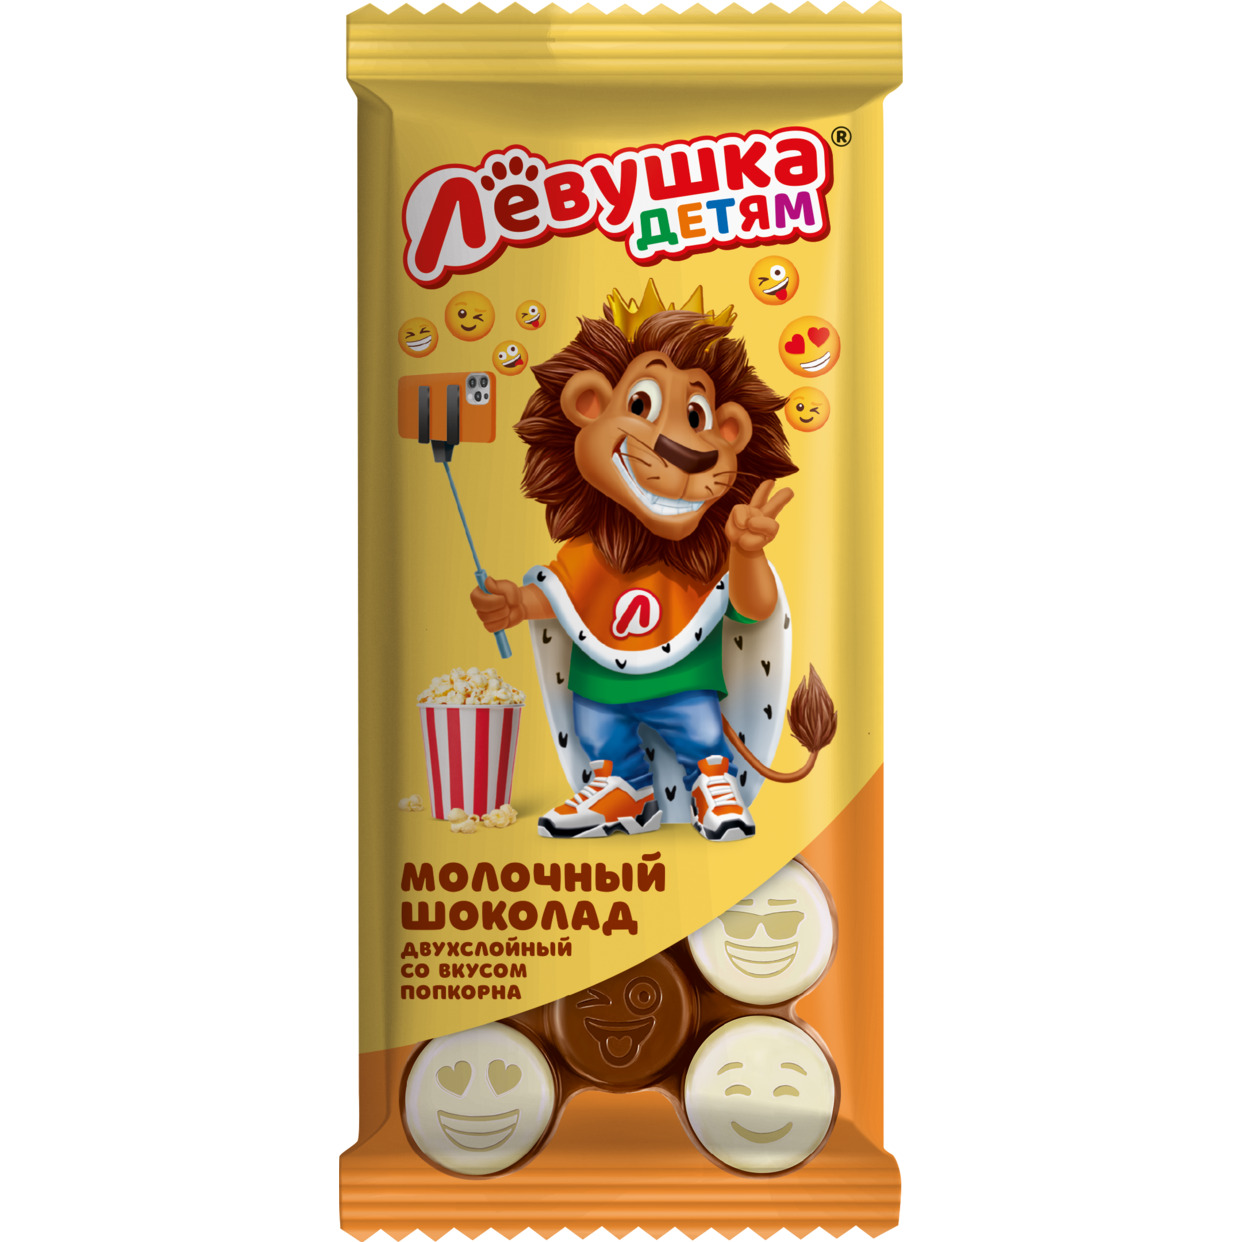 Шоколад «Левушка детям» молочный и белый со вкусом попкорна 85 г Славянка